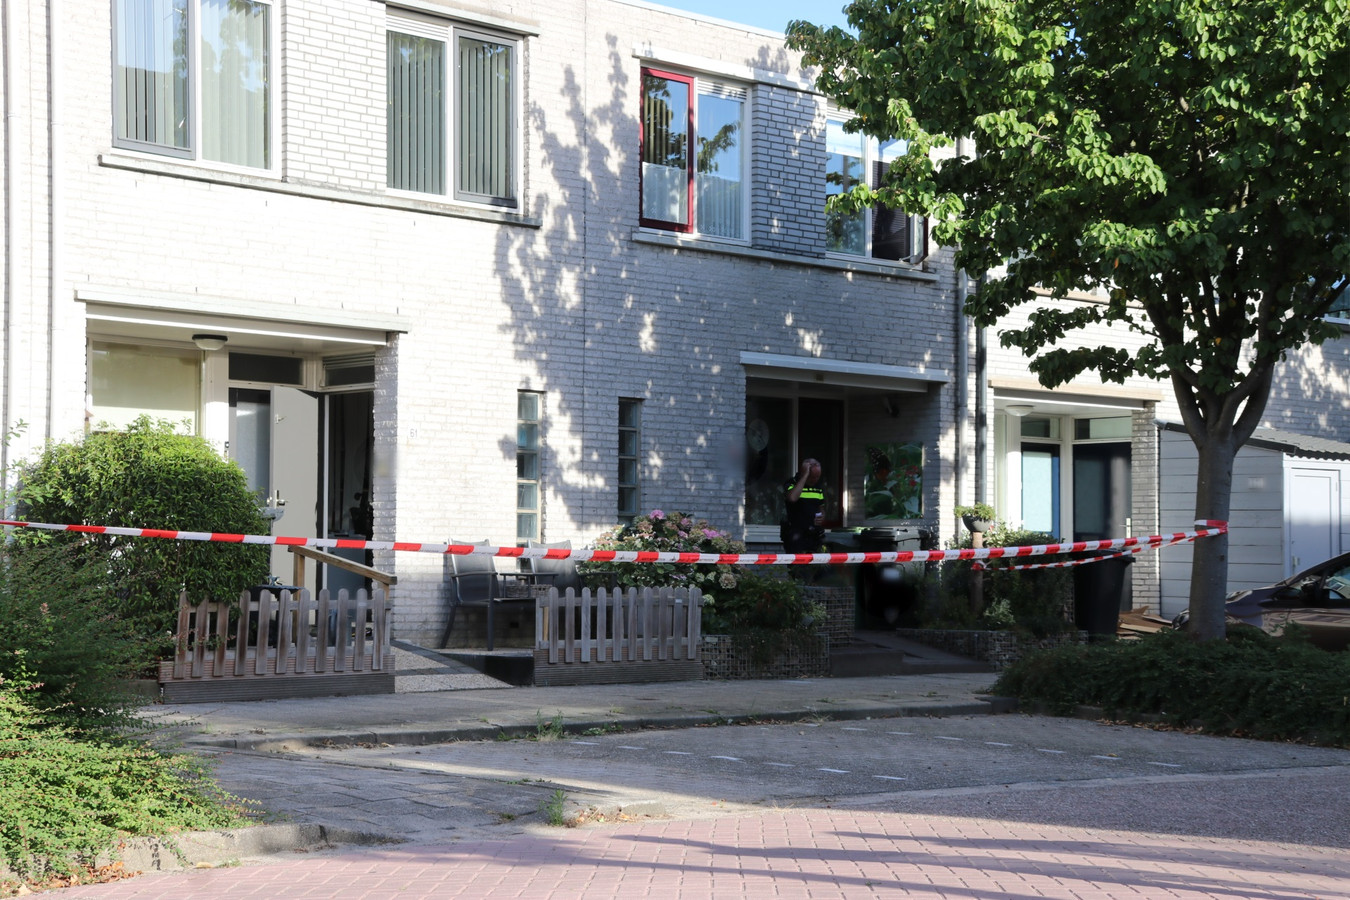 De politie heeft zaterdagmiddag twee overleden personen gevonden in een woning aan het Kramerplan in Zoetermeer.